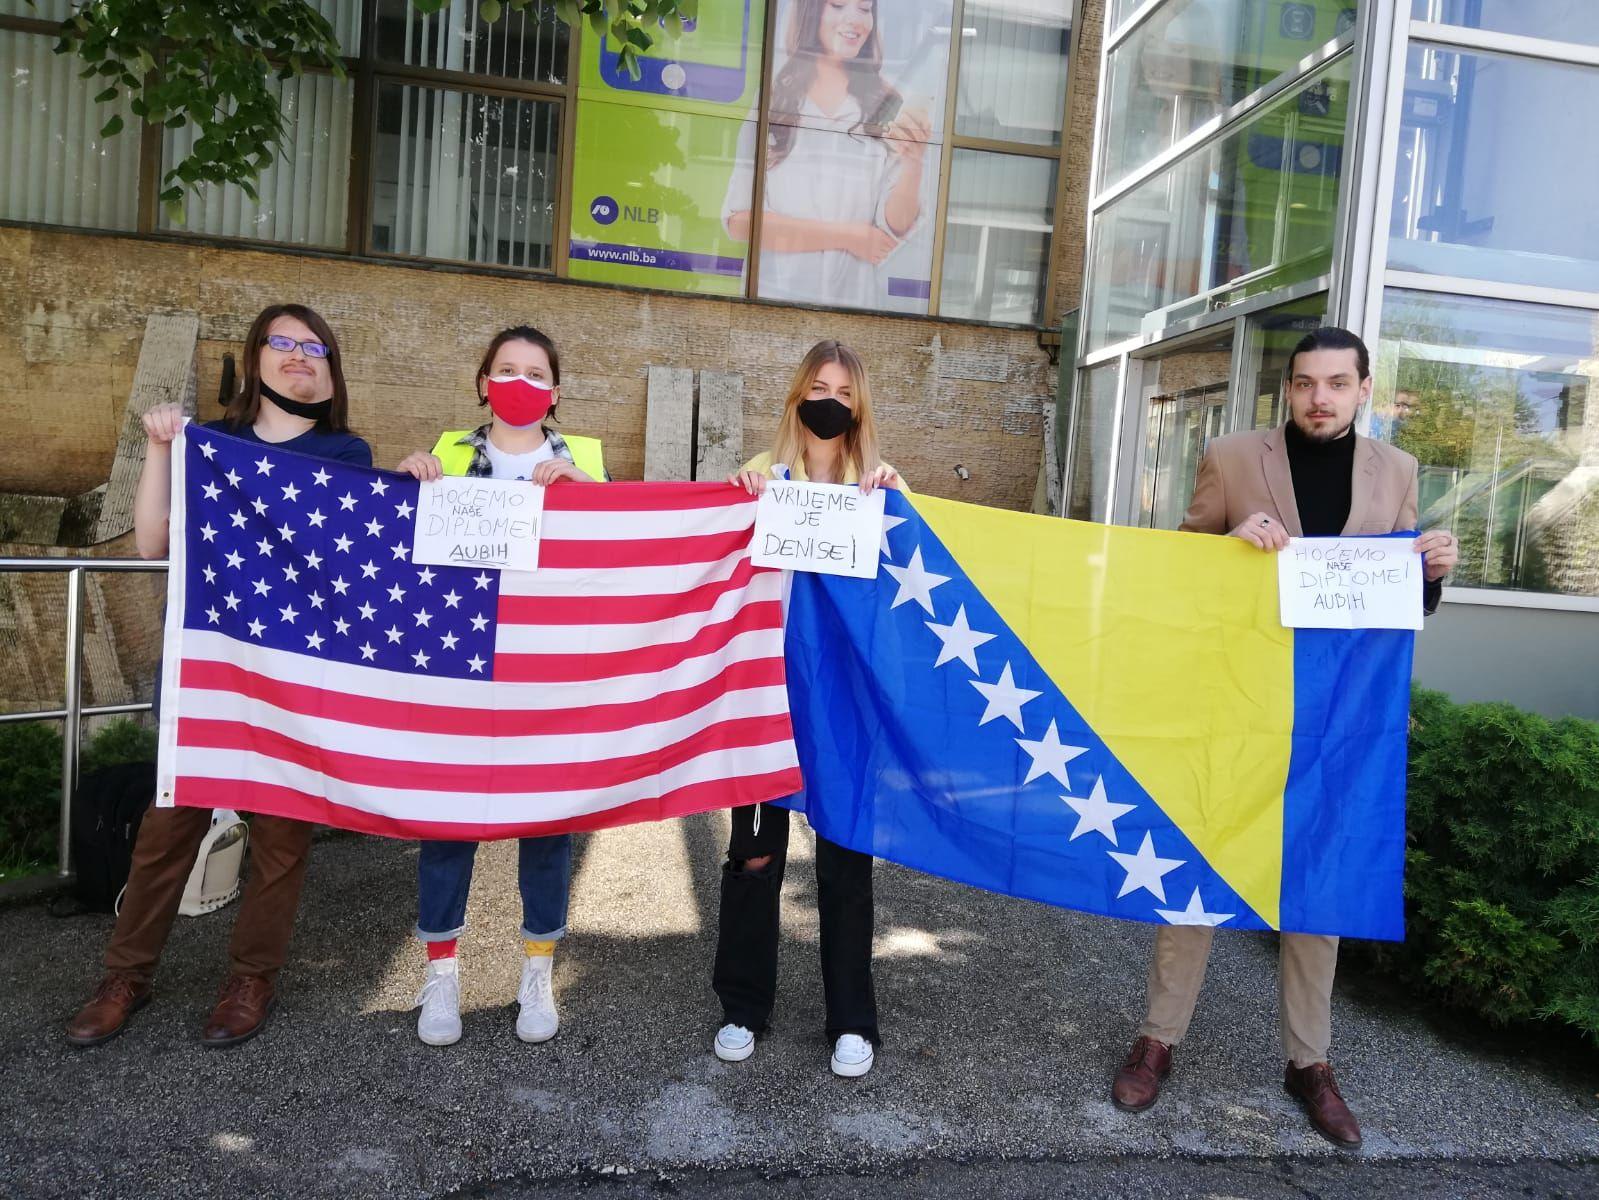 Studenti Američkog univerziteta protestirali u Tuzli: Denise Prciću dosta je reketiranja